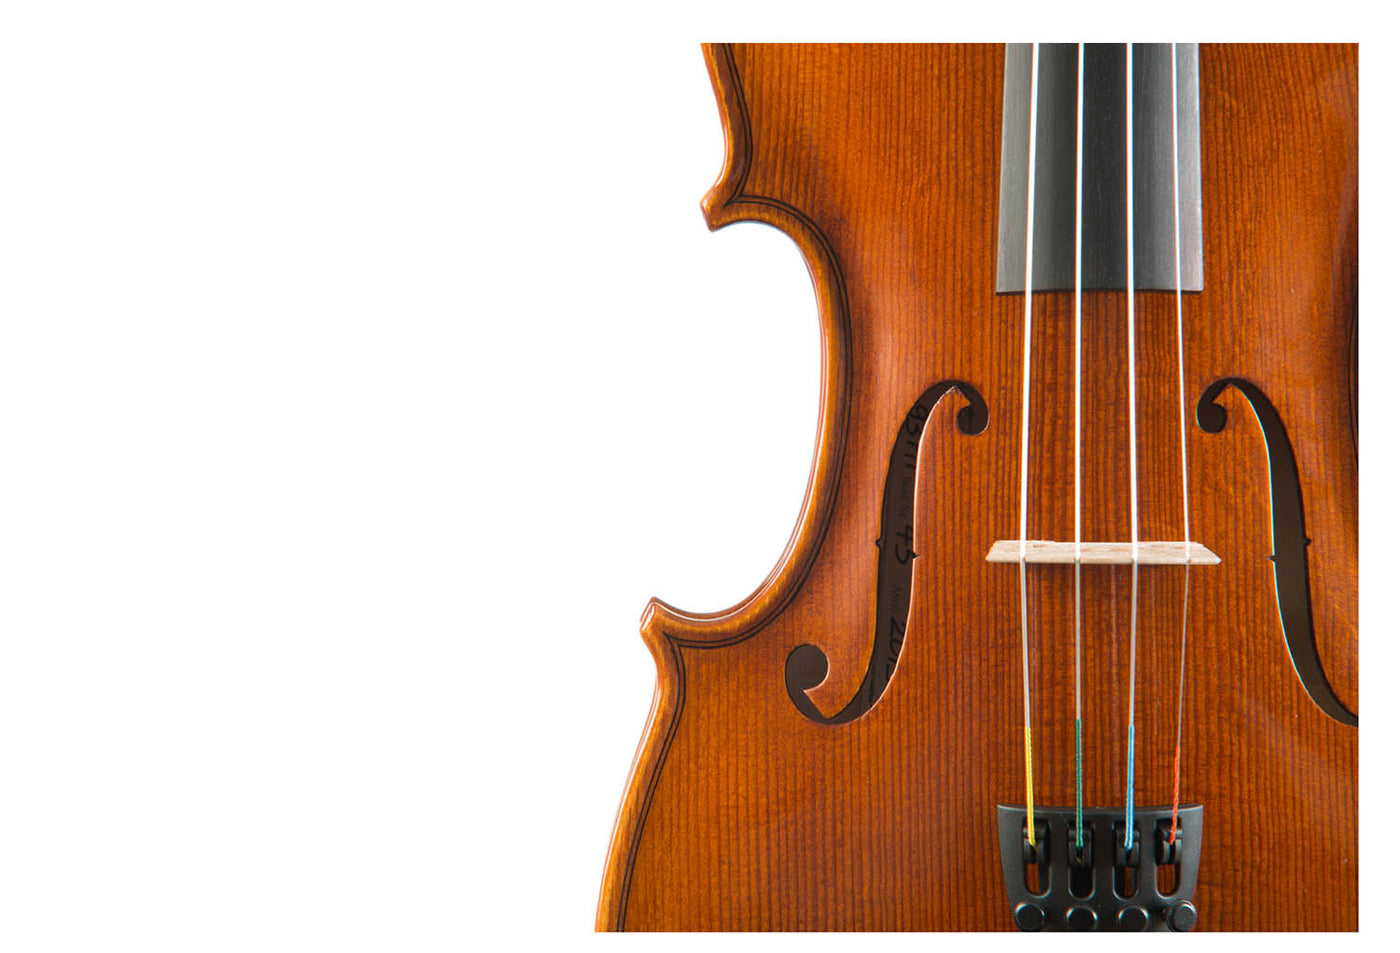 MENUETT Violin #93 MT 